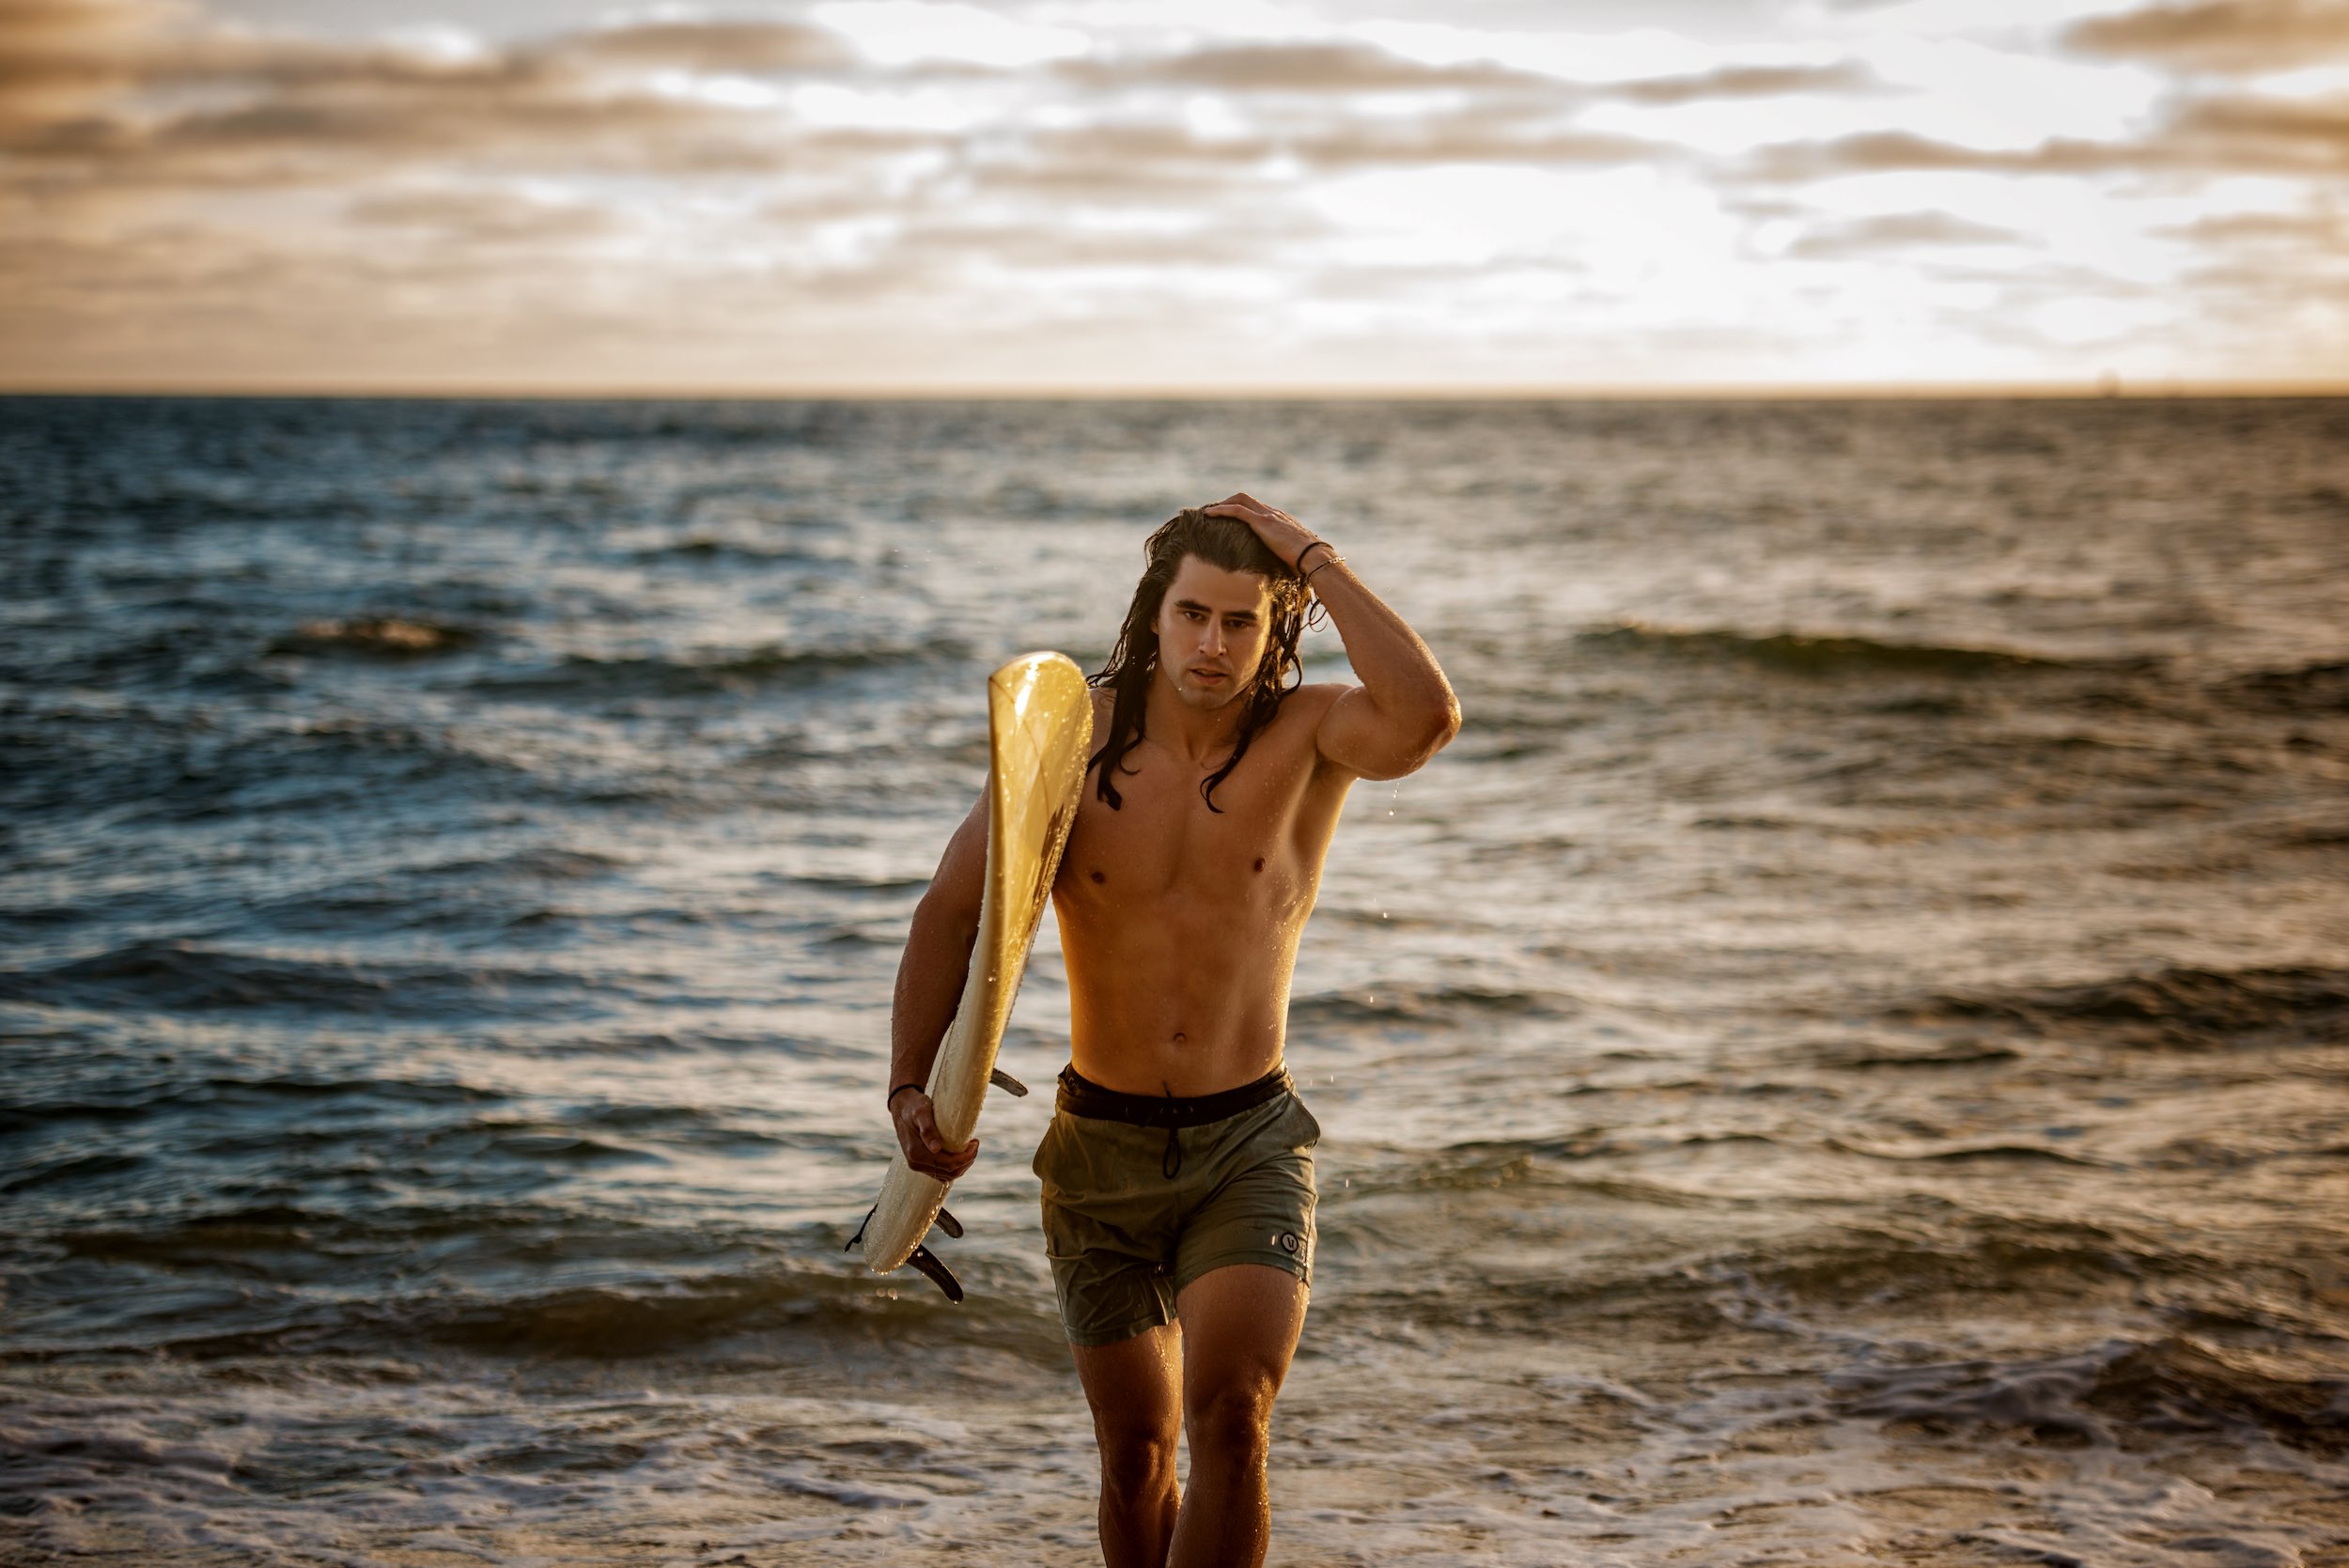 Epic Surfer-Peter Lefevre Photography July 2020